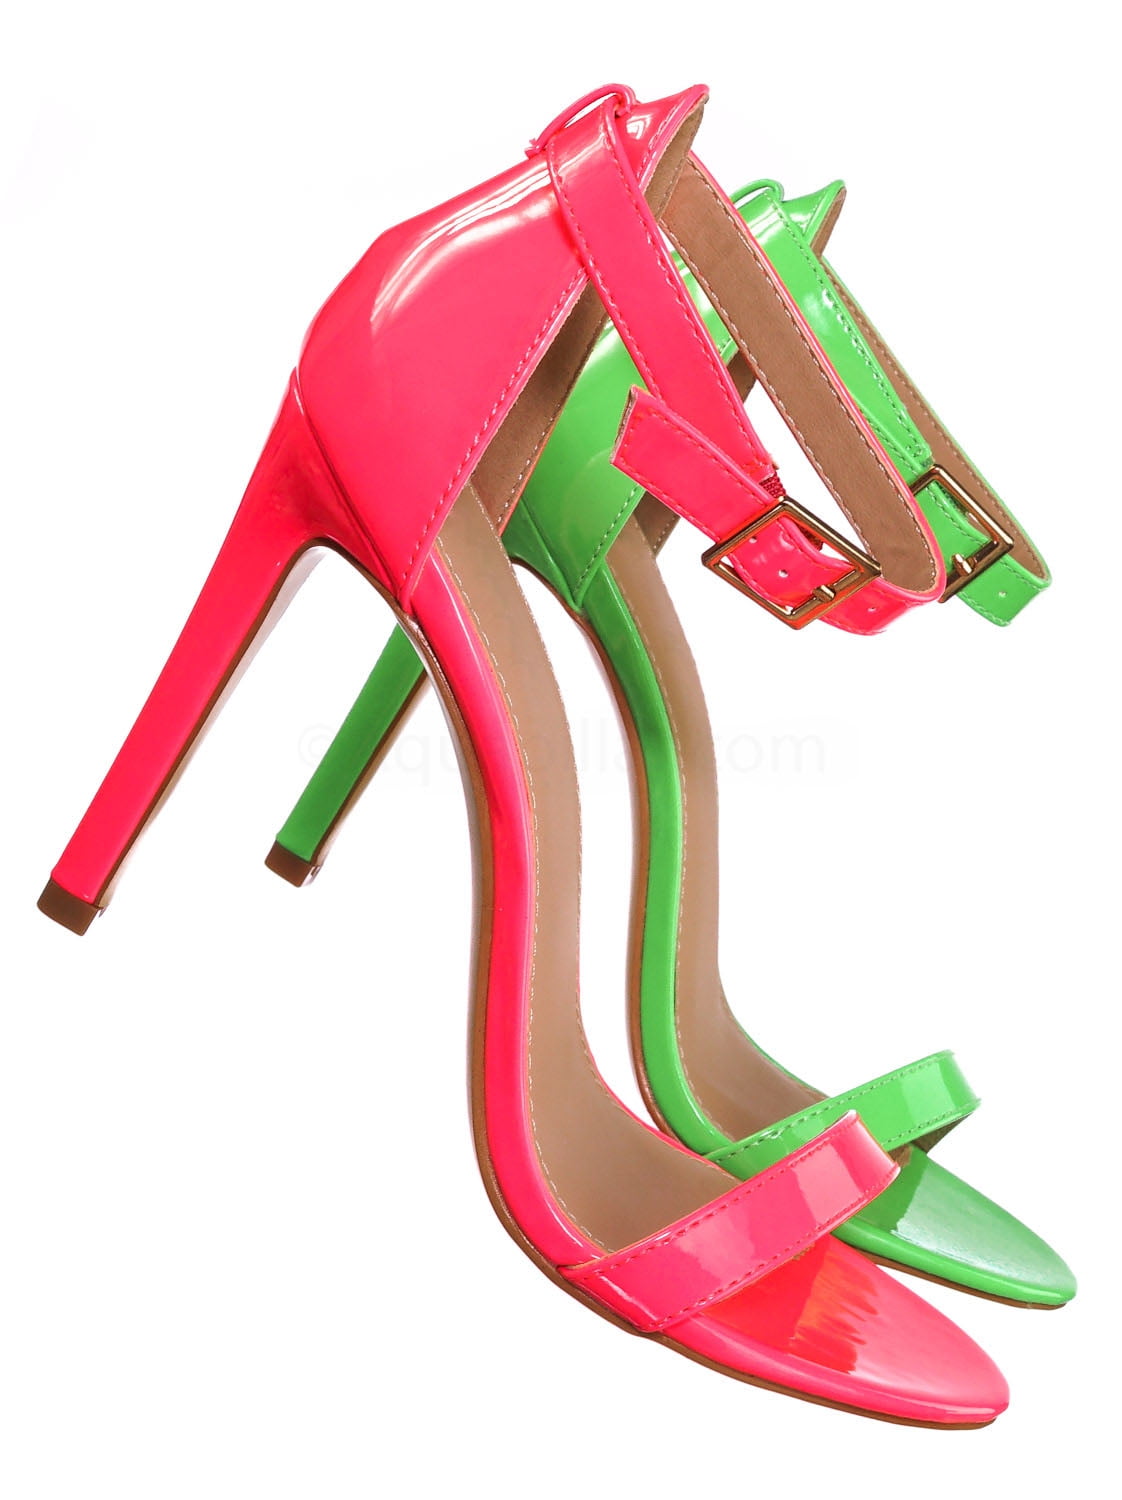 neon high heels shoes